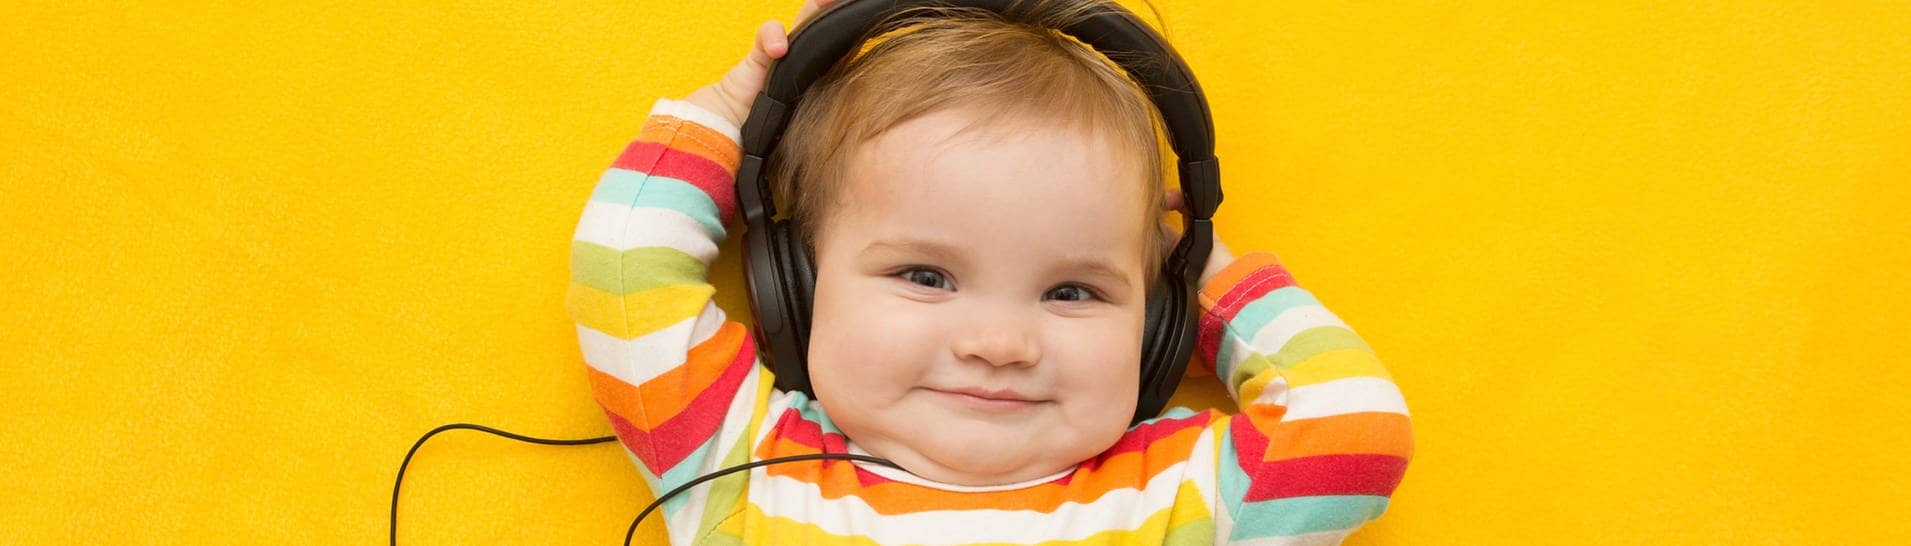 Ein Baby mit buntem Ringelpullover, das Kopfhörer trägt. Symbolisch steht das Bild für Musik, die Babies beruhigen soll.